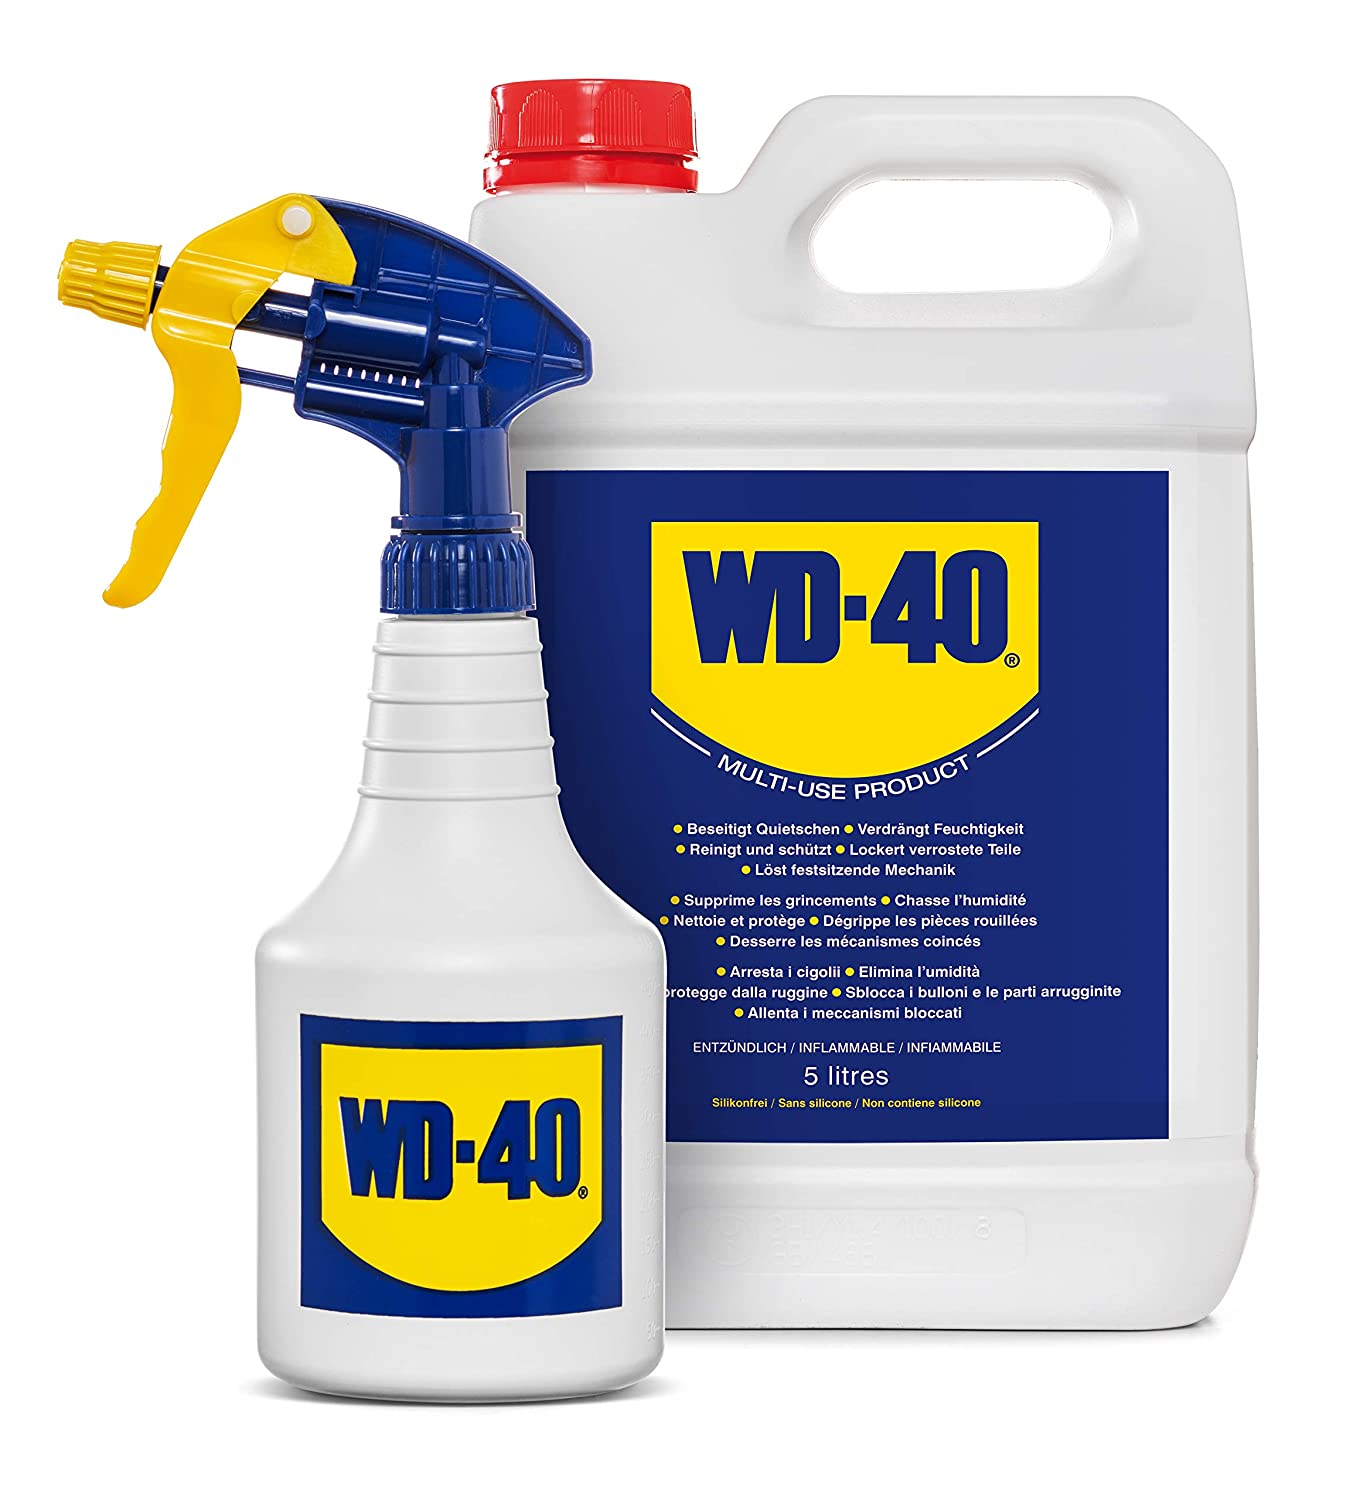 WD-40 Prodotto Multifunzione - Lubrificante Tanica da 5 lt + Dosatore Spray incluso